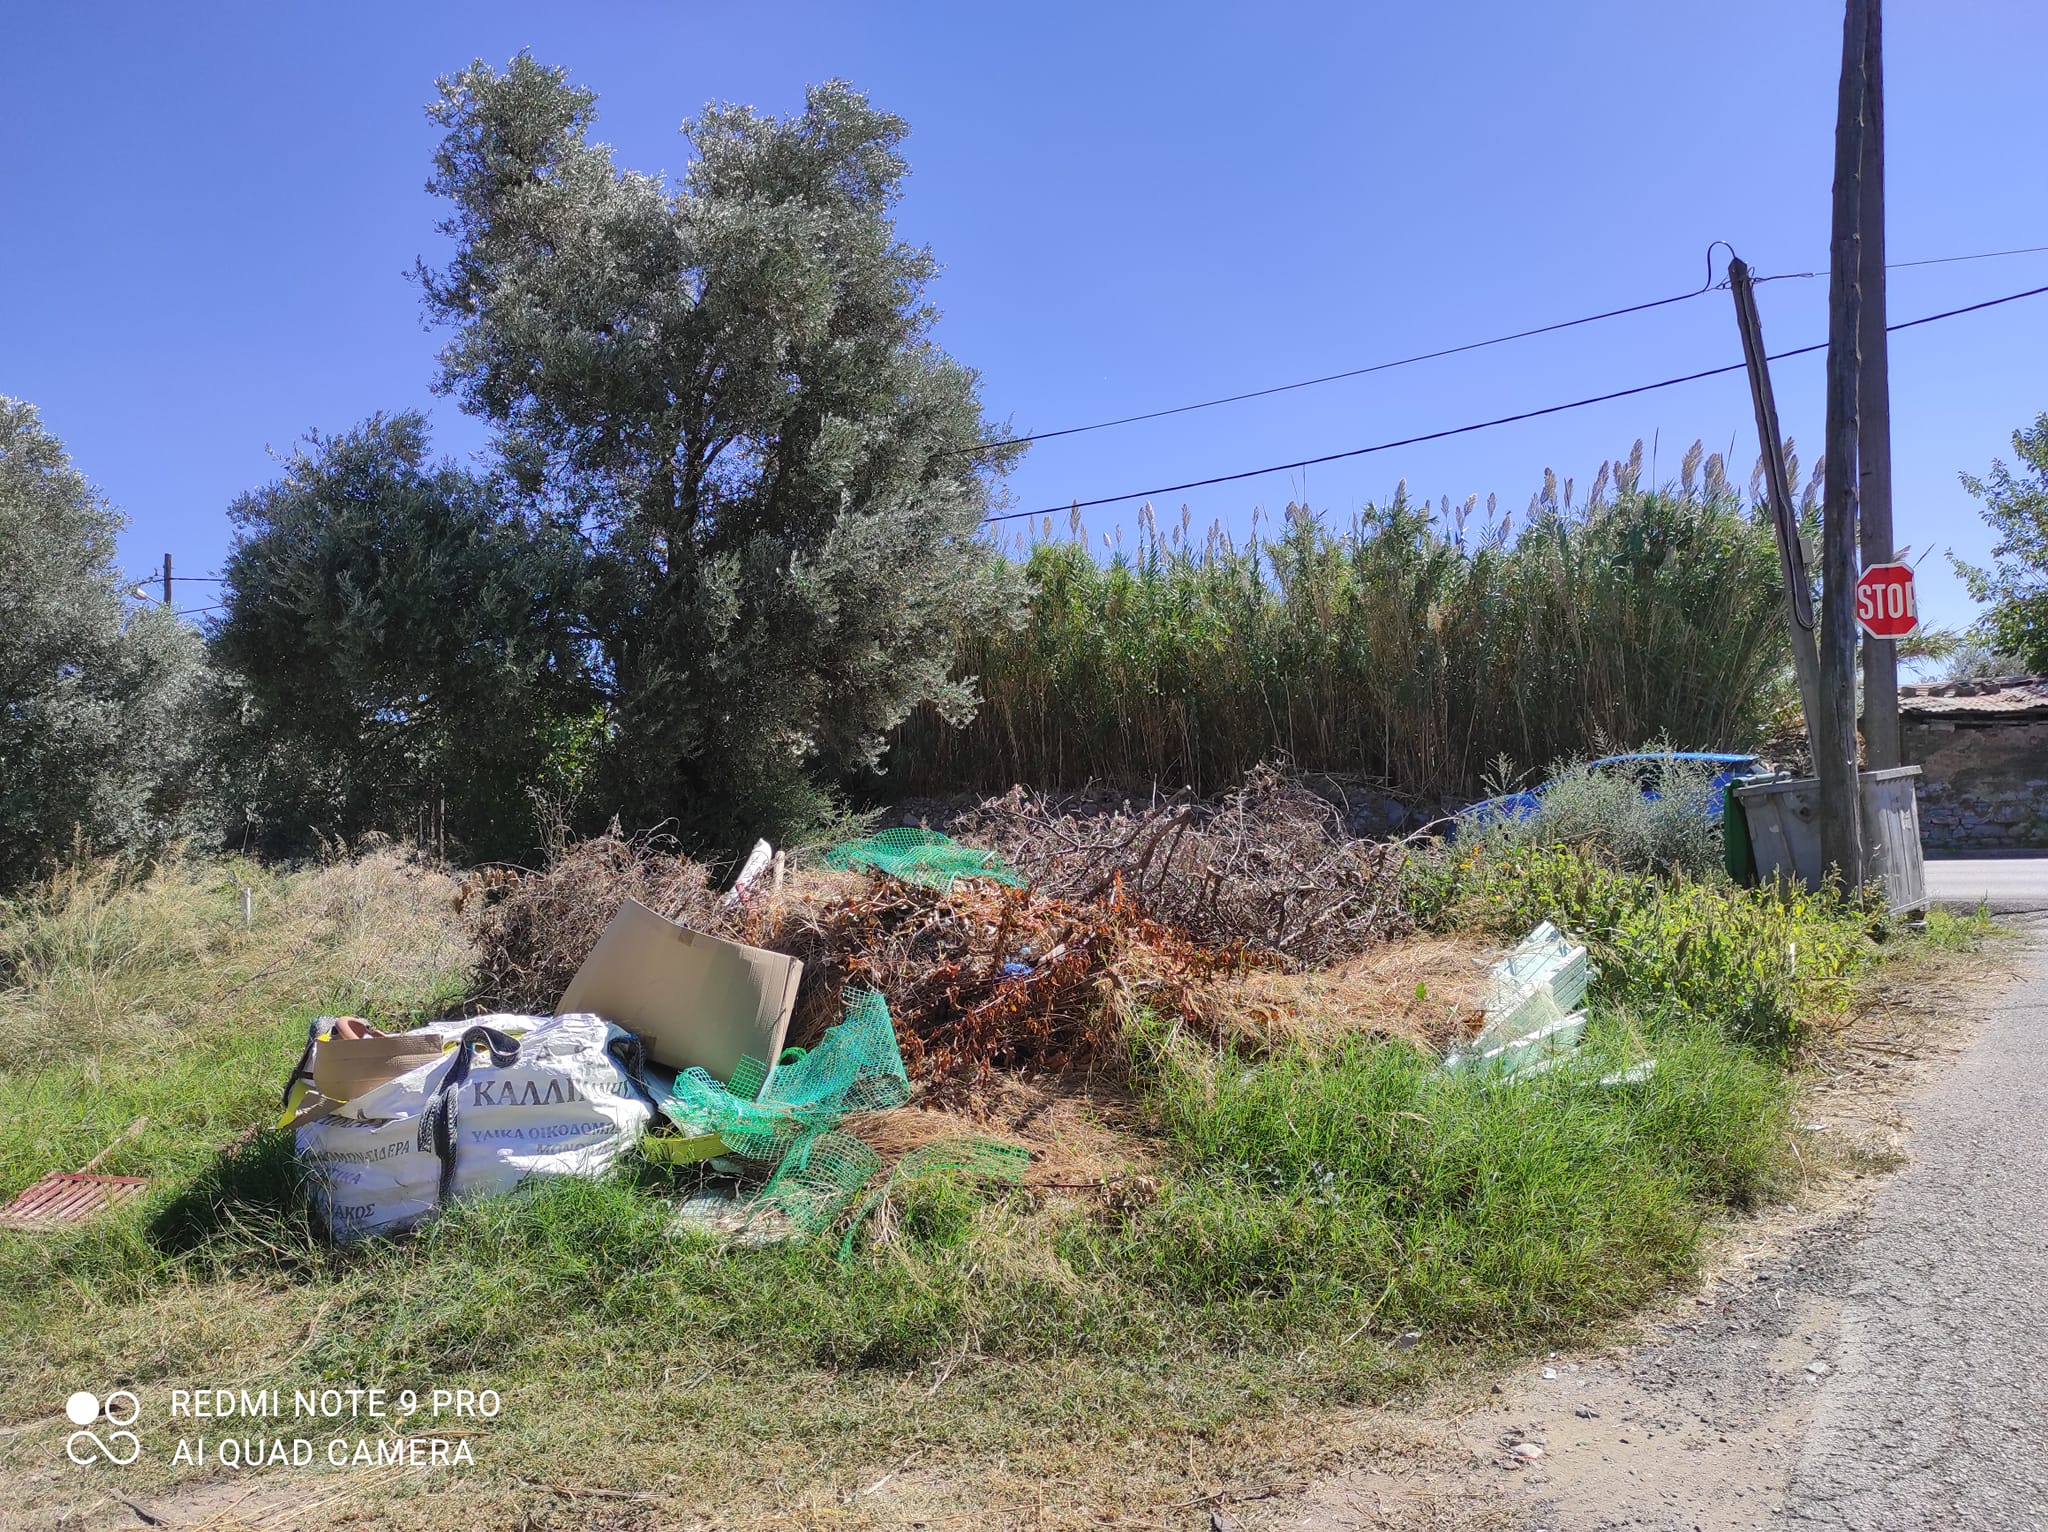 Εύβοια: Ξερόκλαδα και σκουπίδια παρατημένα εδώ και 2 μήνες στο ίδιο σημειο στην Χαλκίδα